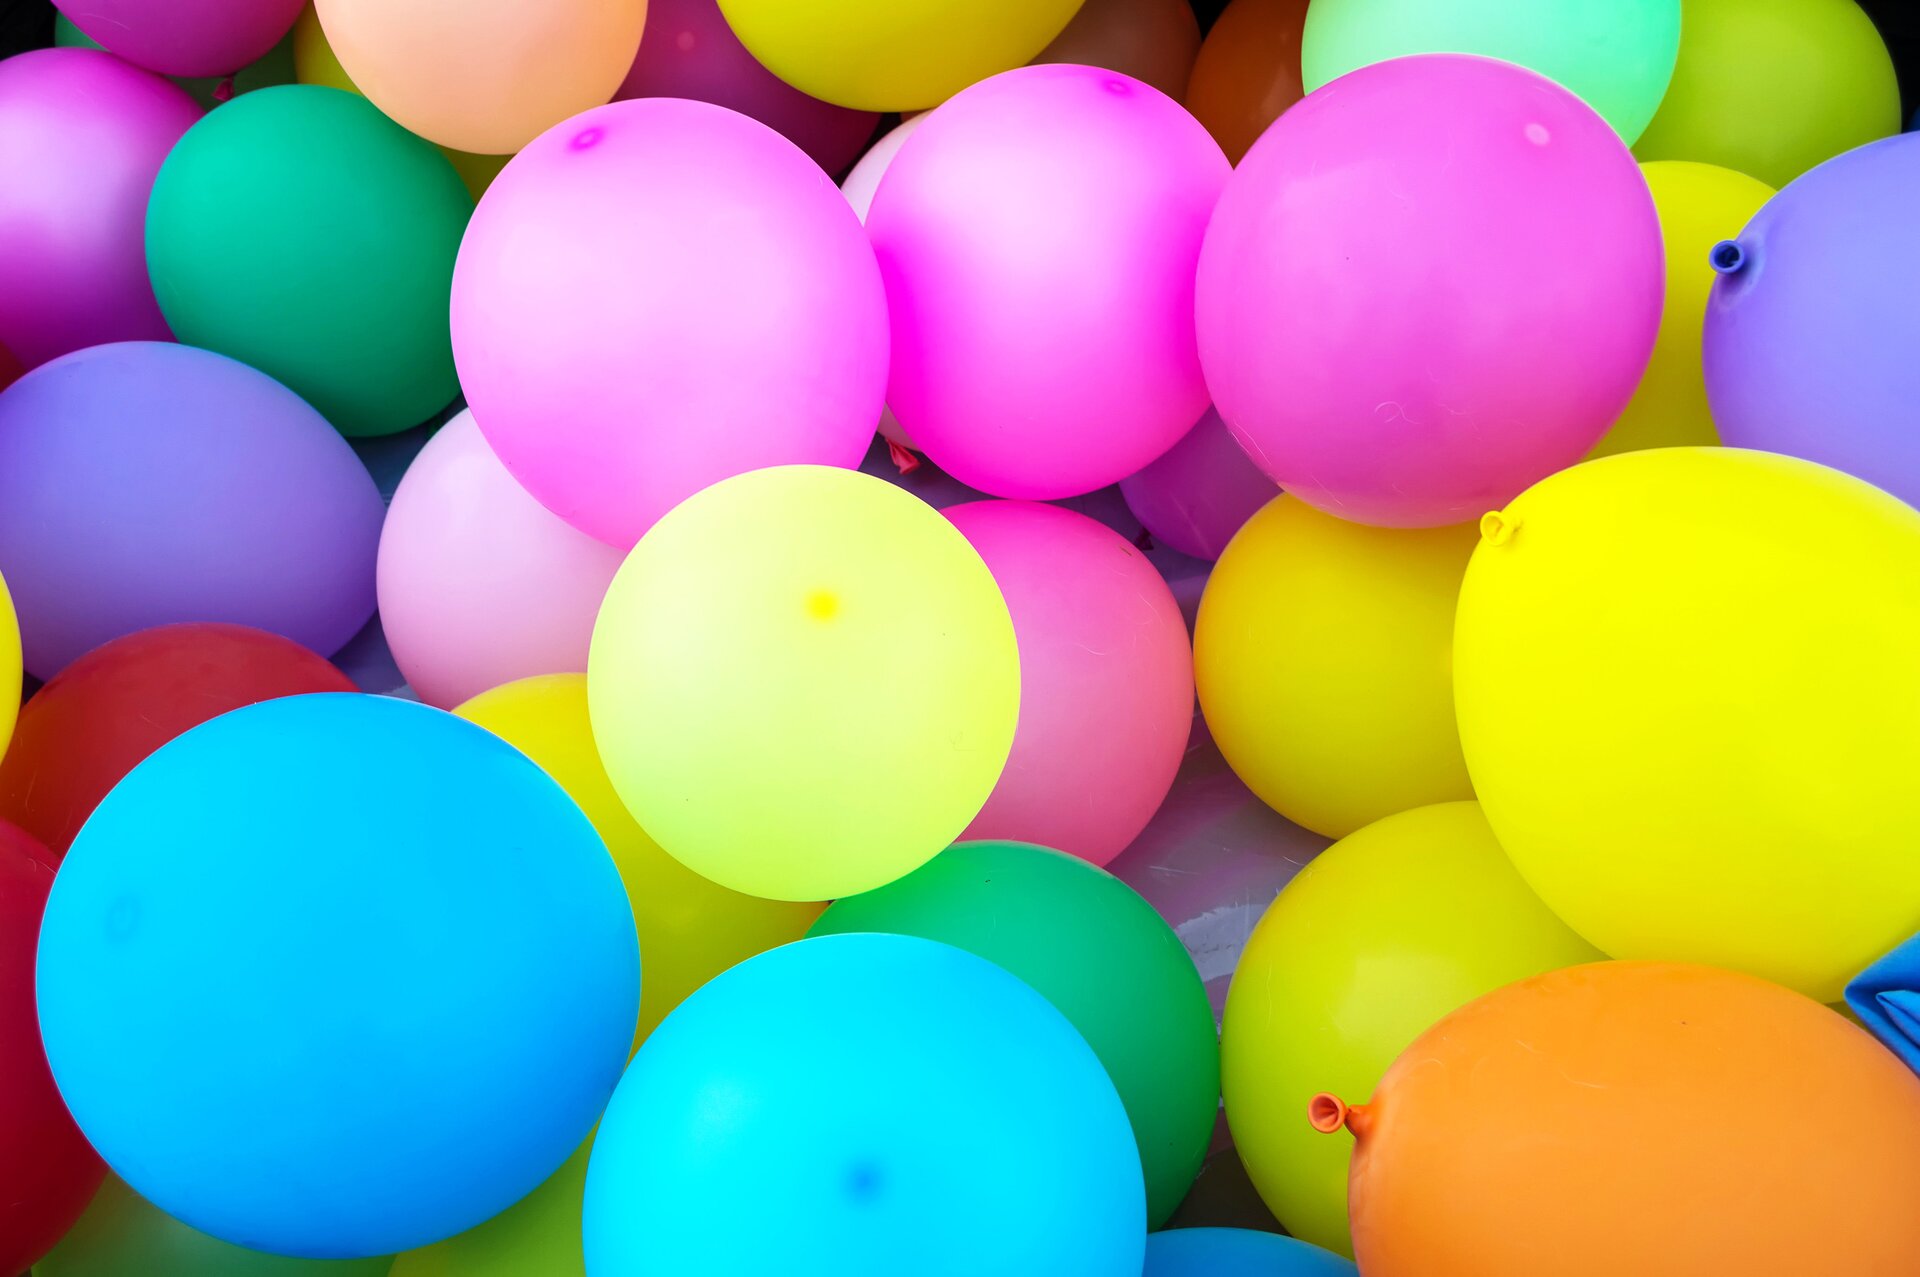 Rys. a. Zdjęcie przedstawia kompozycję złożoną z kolorowych balonów wypełnionych powietrzem. Balony są wielokolorowe, przeważają różowe, żółte, niebieskie oraz pojedyncze balony koloru zielonego i fioletowego. Pojawiają się również balony koloru czerwonego i pomarańczowego. Kompozycja jest pastelowa i radosna. 